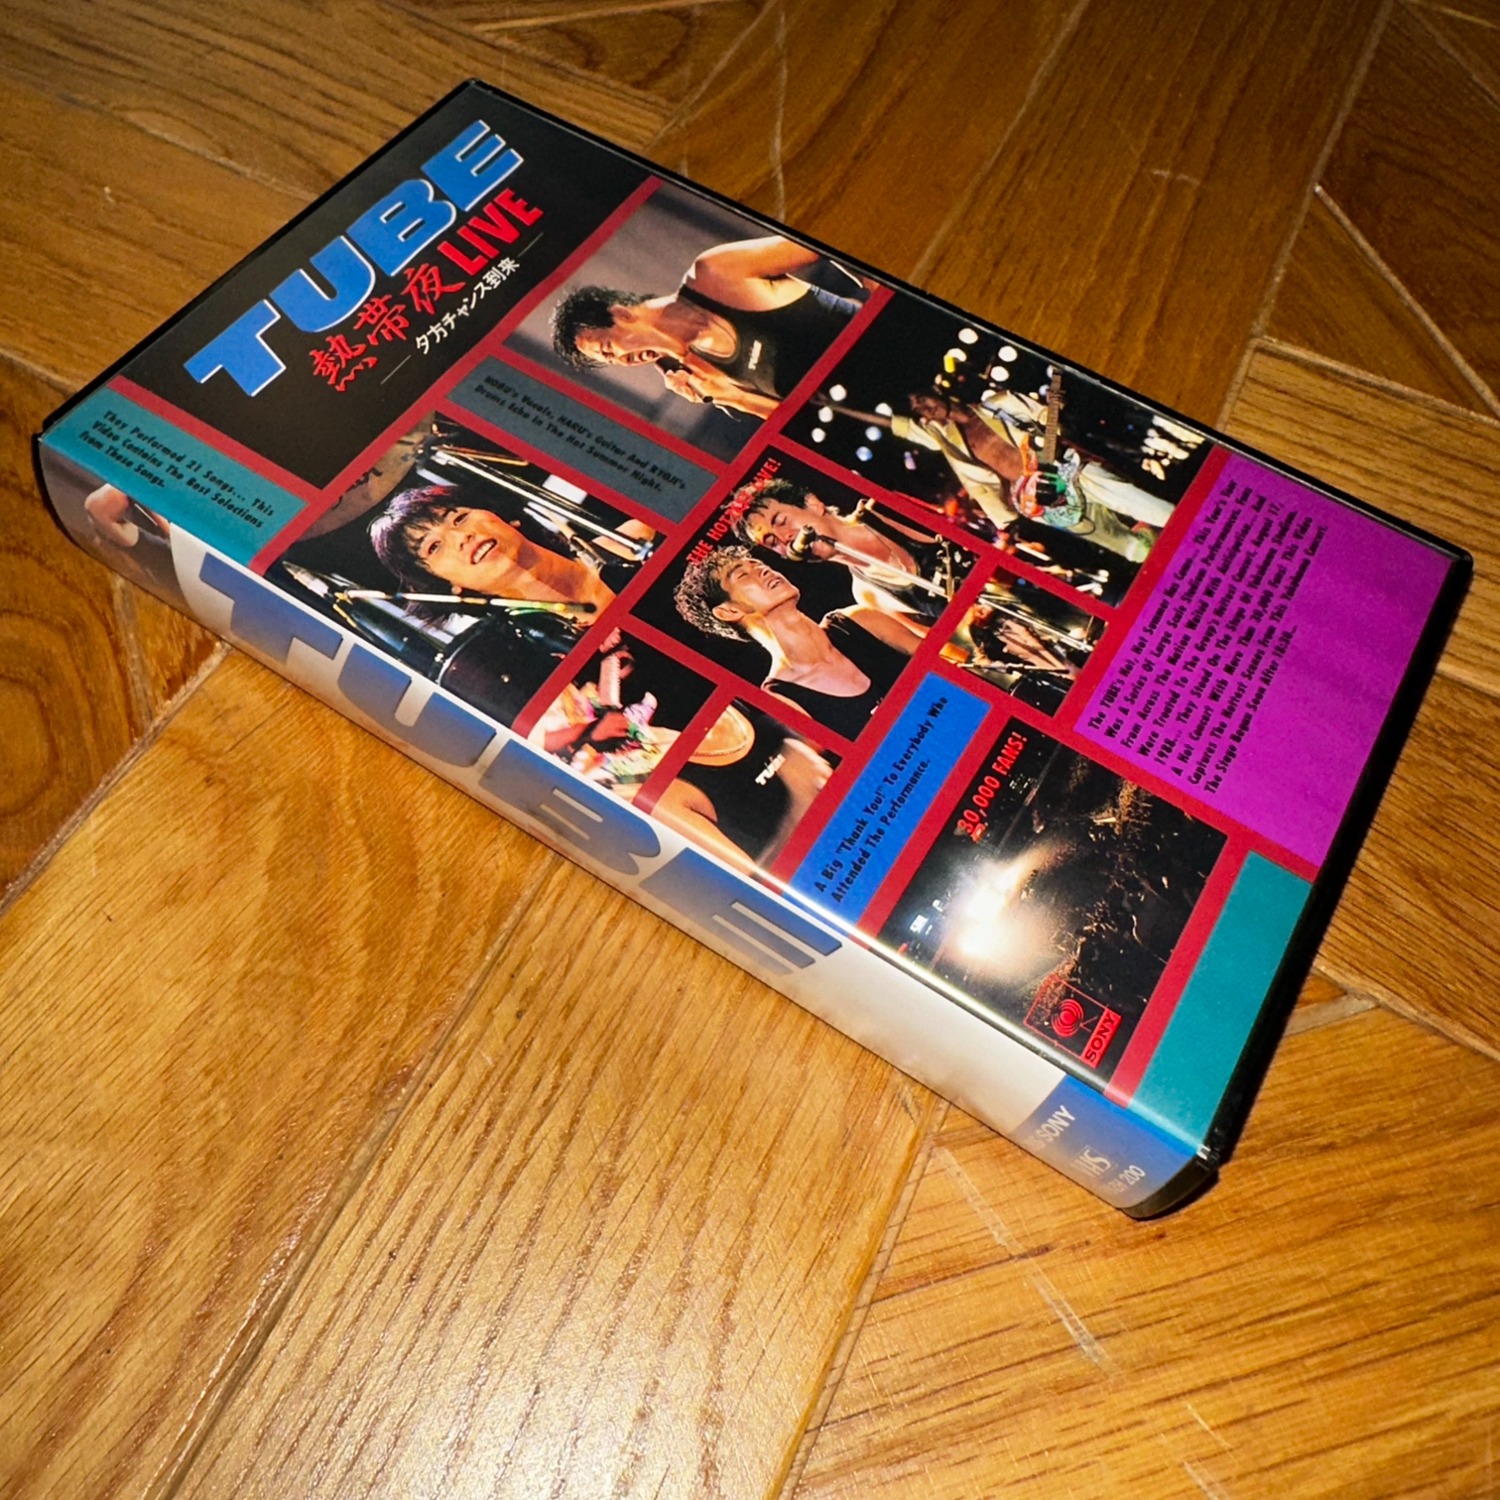 체리드라이버체리드라이버 [TUBE 열대야 라이브 VHS, TUBE 熱帯夜 LIVE VHS]